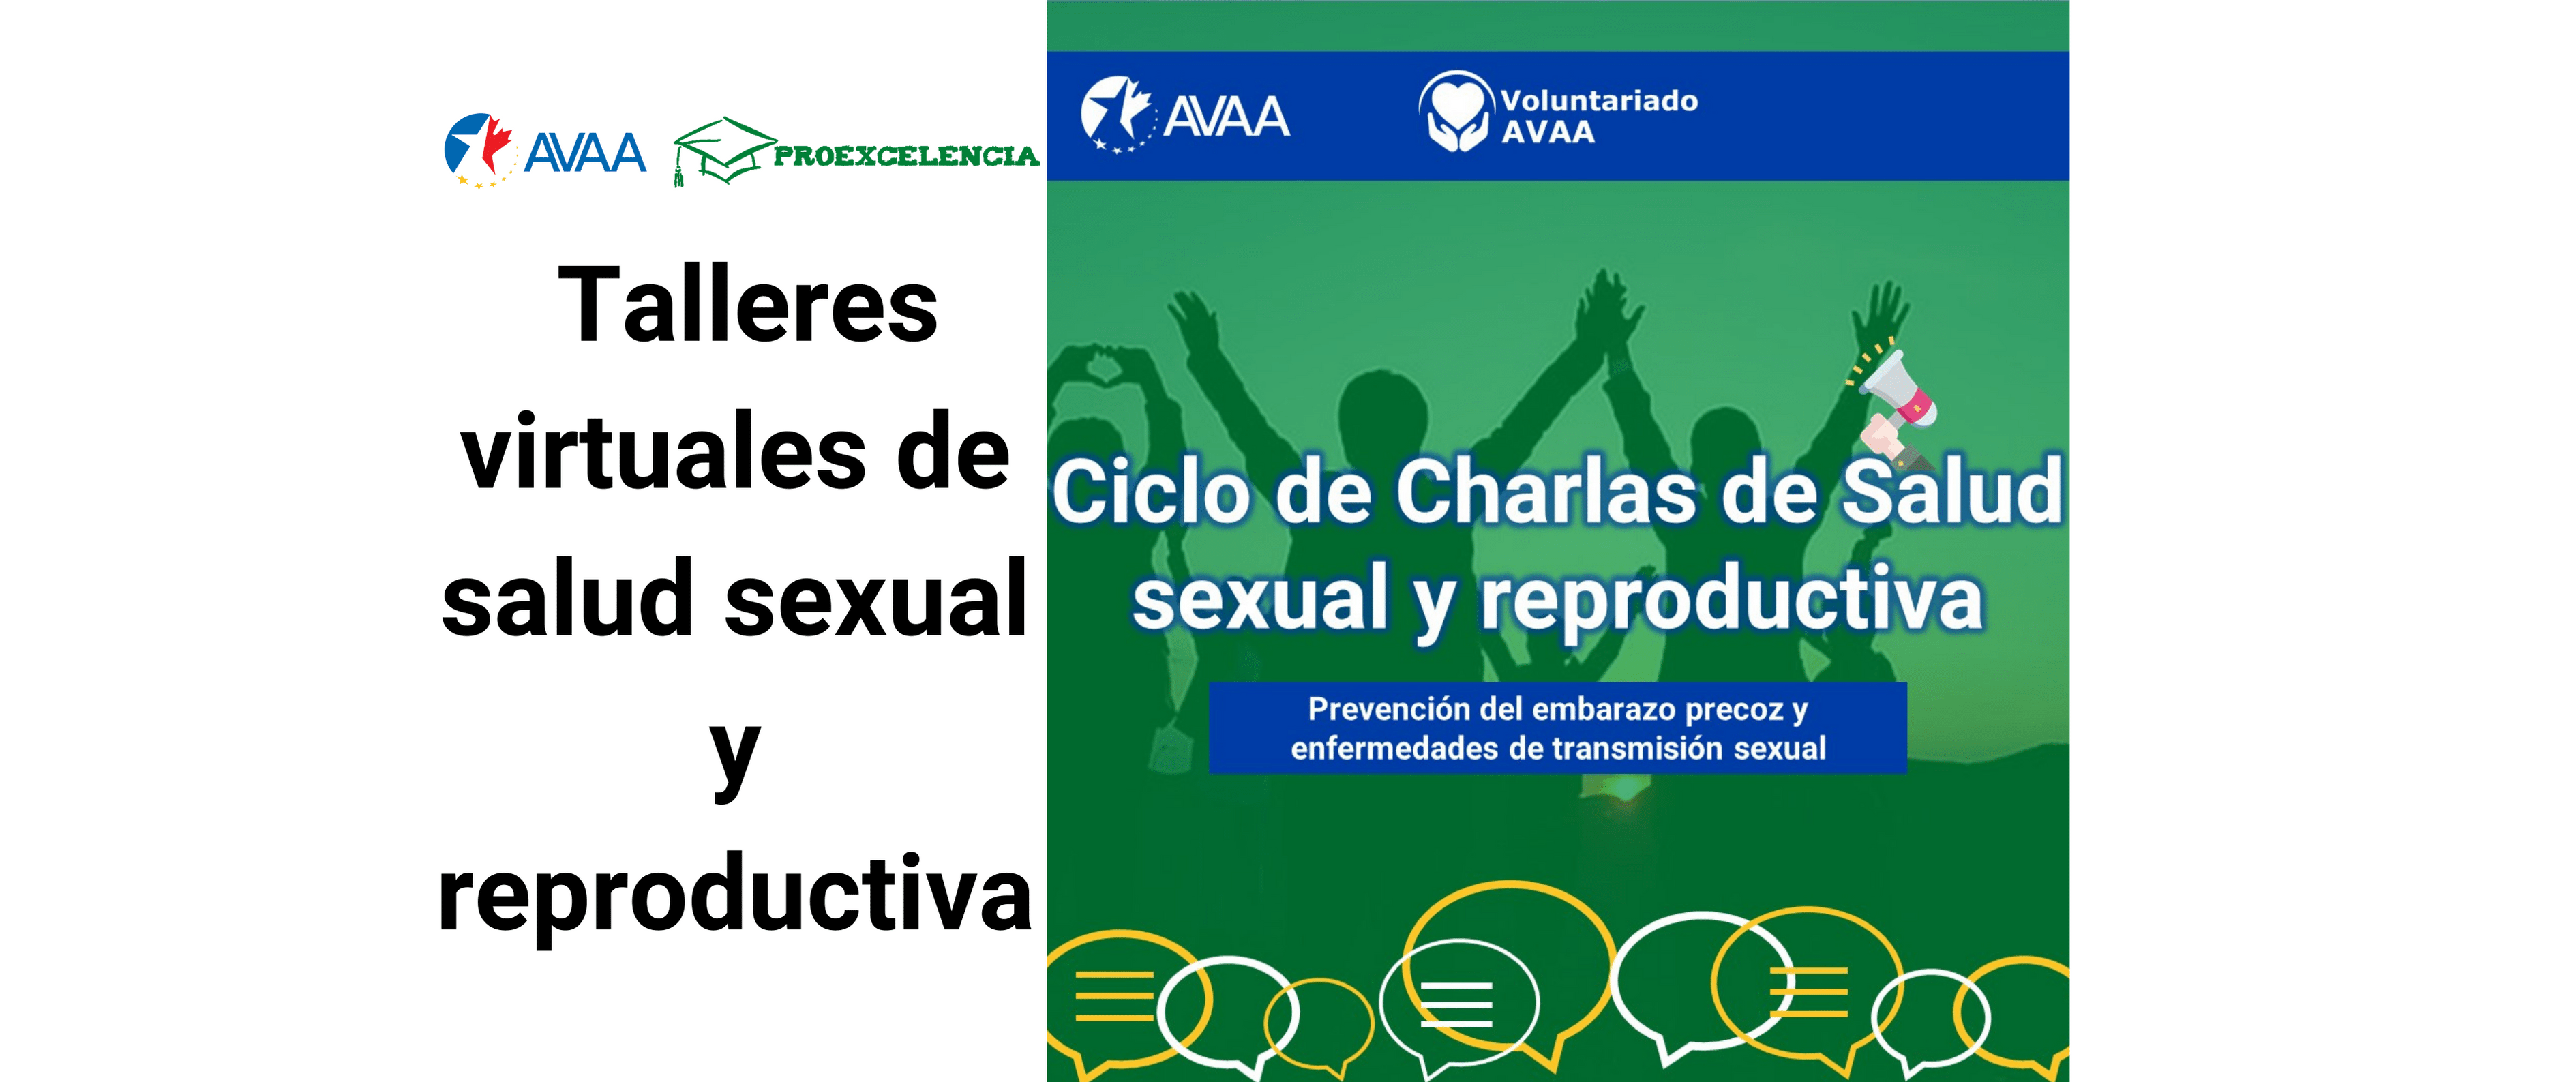 Talleres Virtuales De Salud Sexual Y Reproductiva Avaa 3052